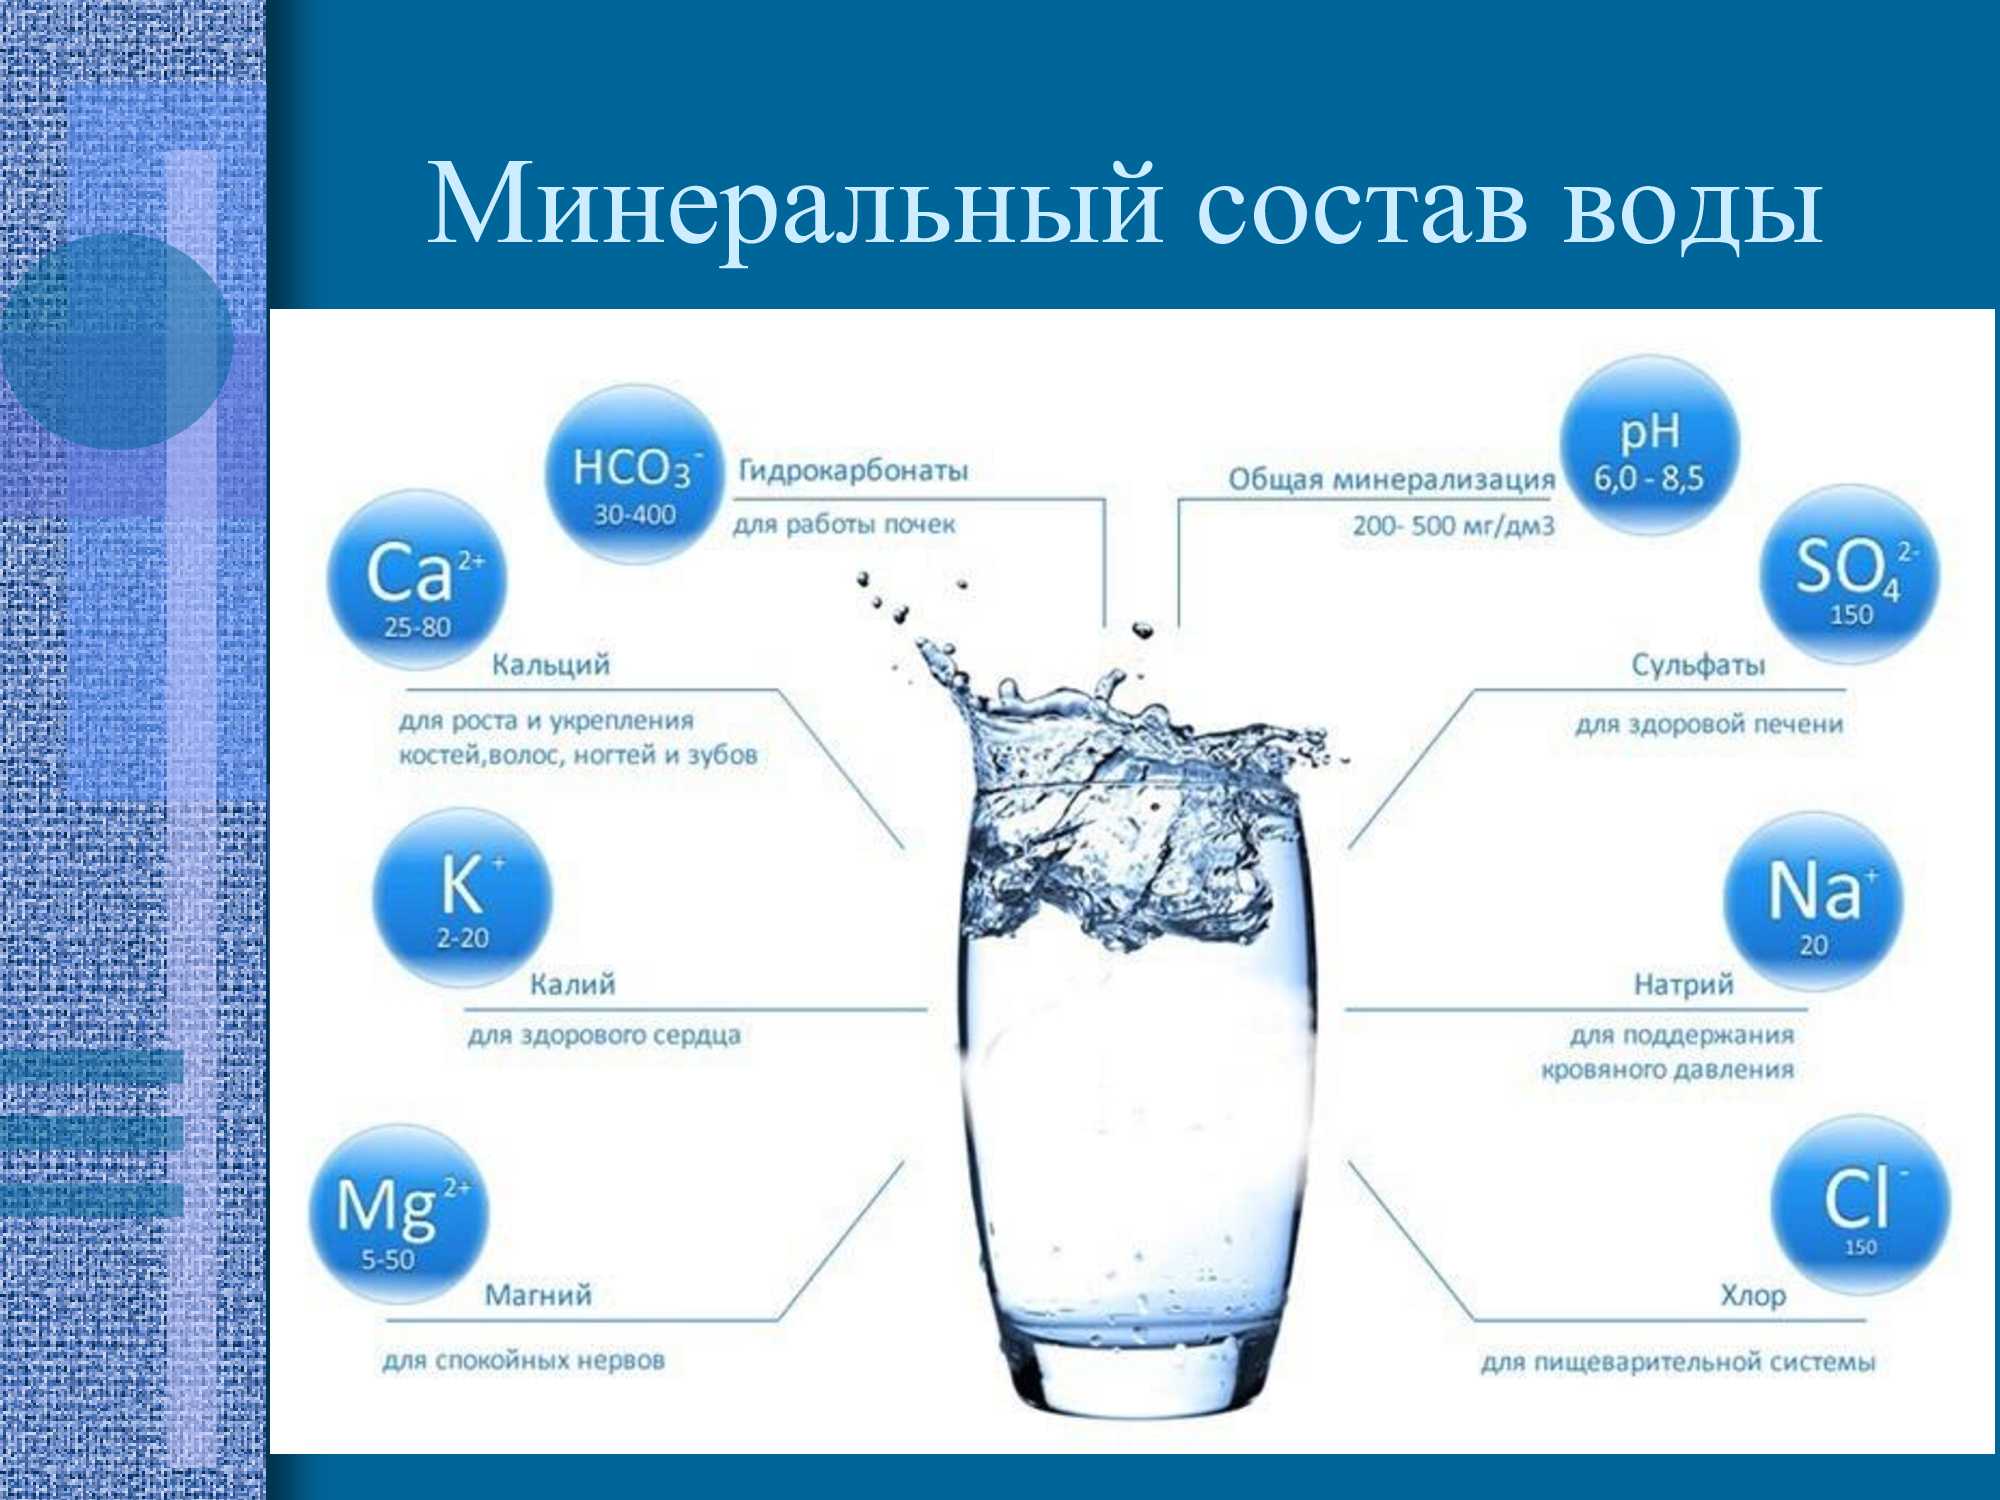 Состав лечебной воды. Химический состав воды схема. Состав питьевой воды диаграмма. Питьевые Минеральные воды. Питьевая вода.